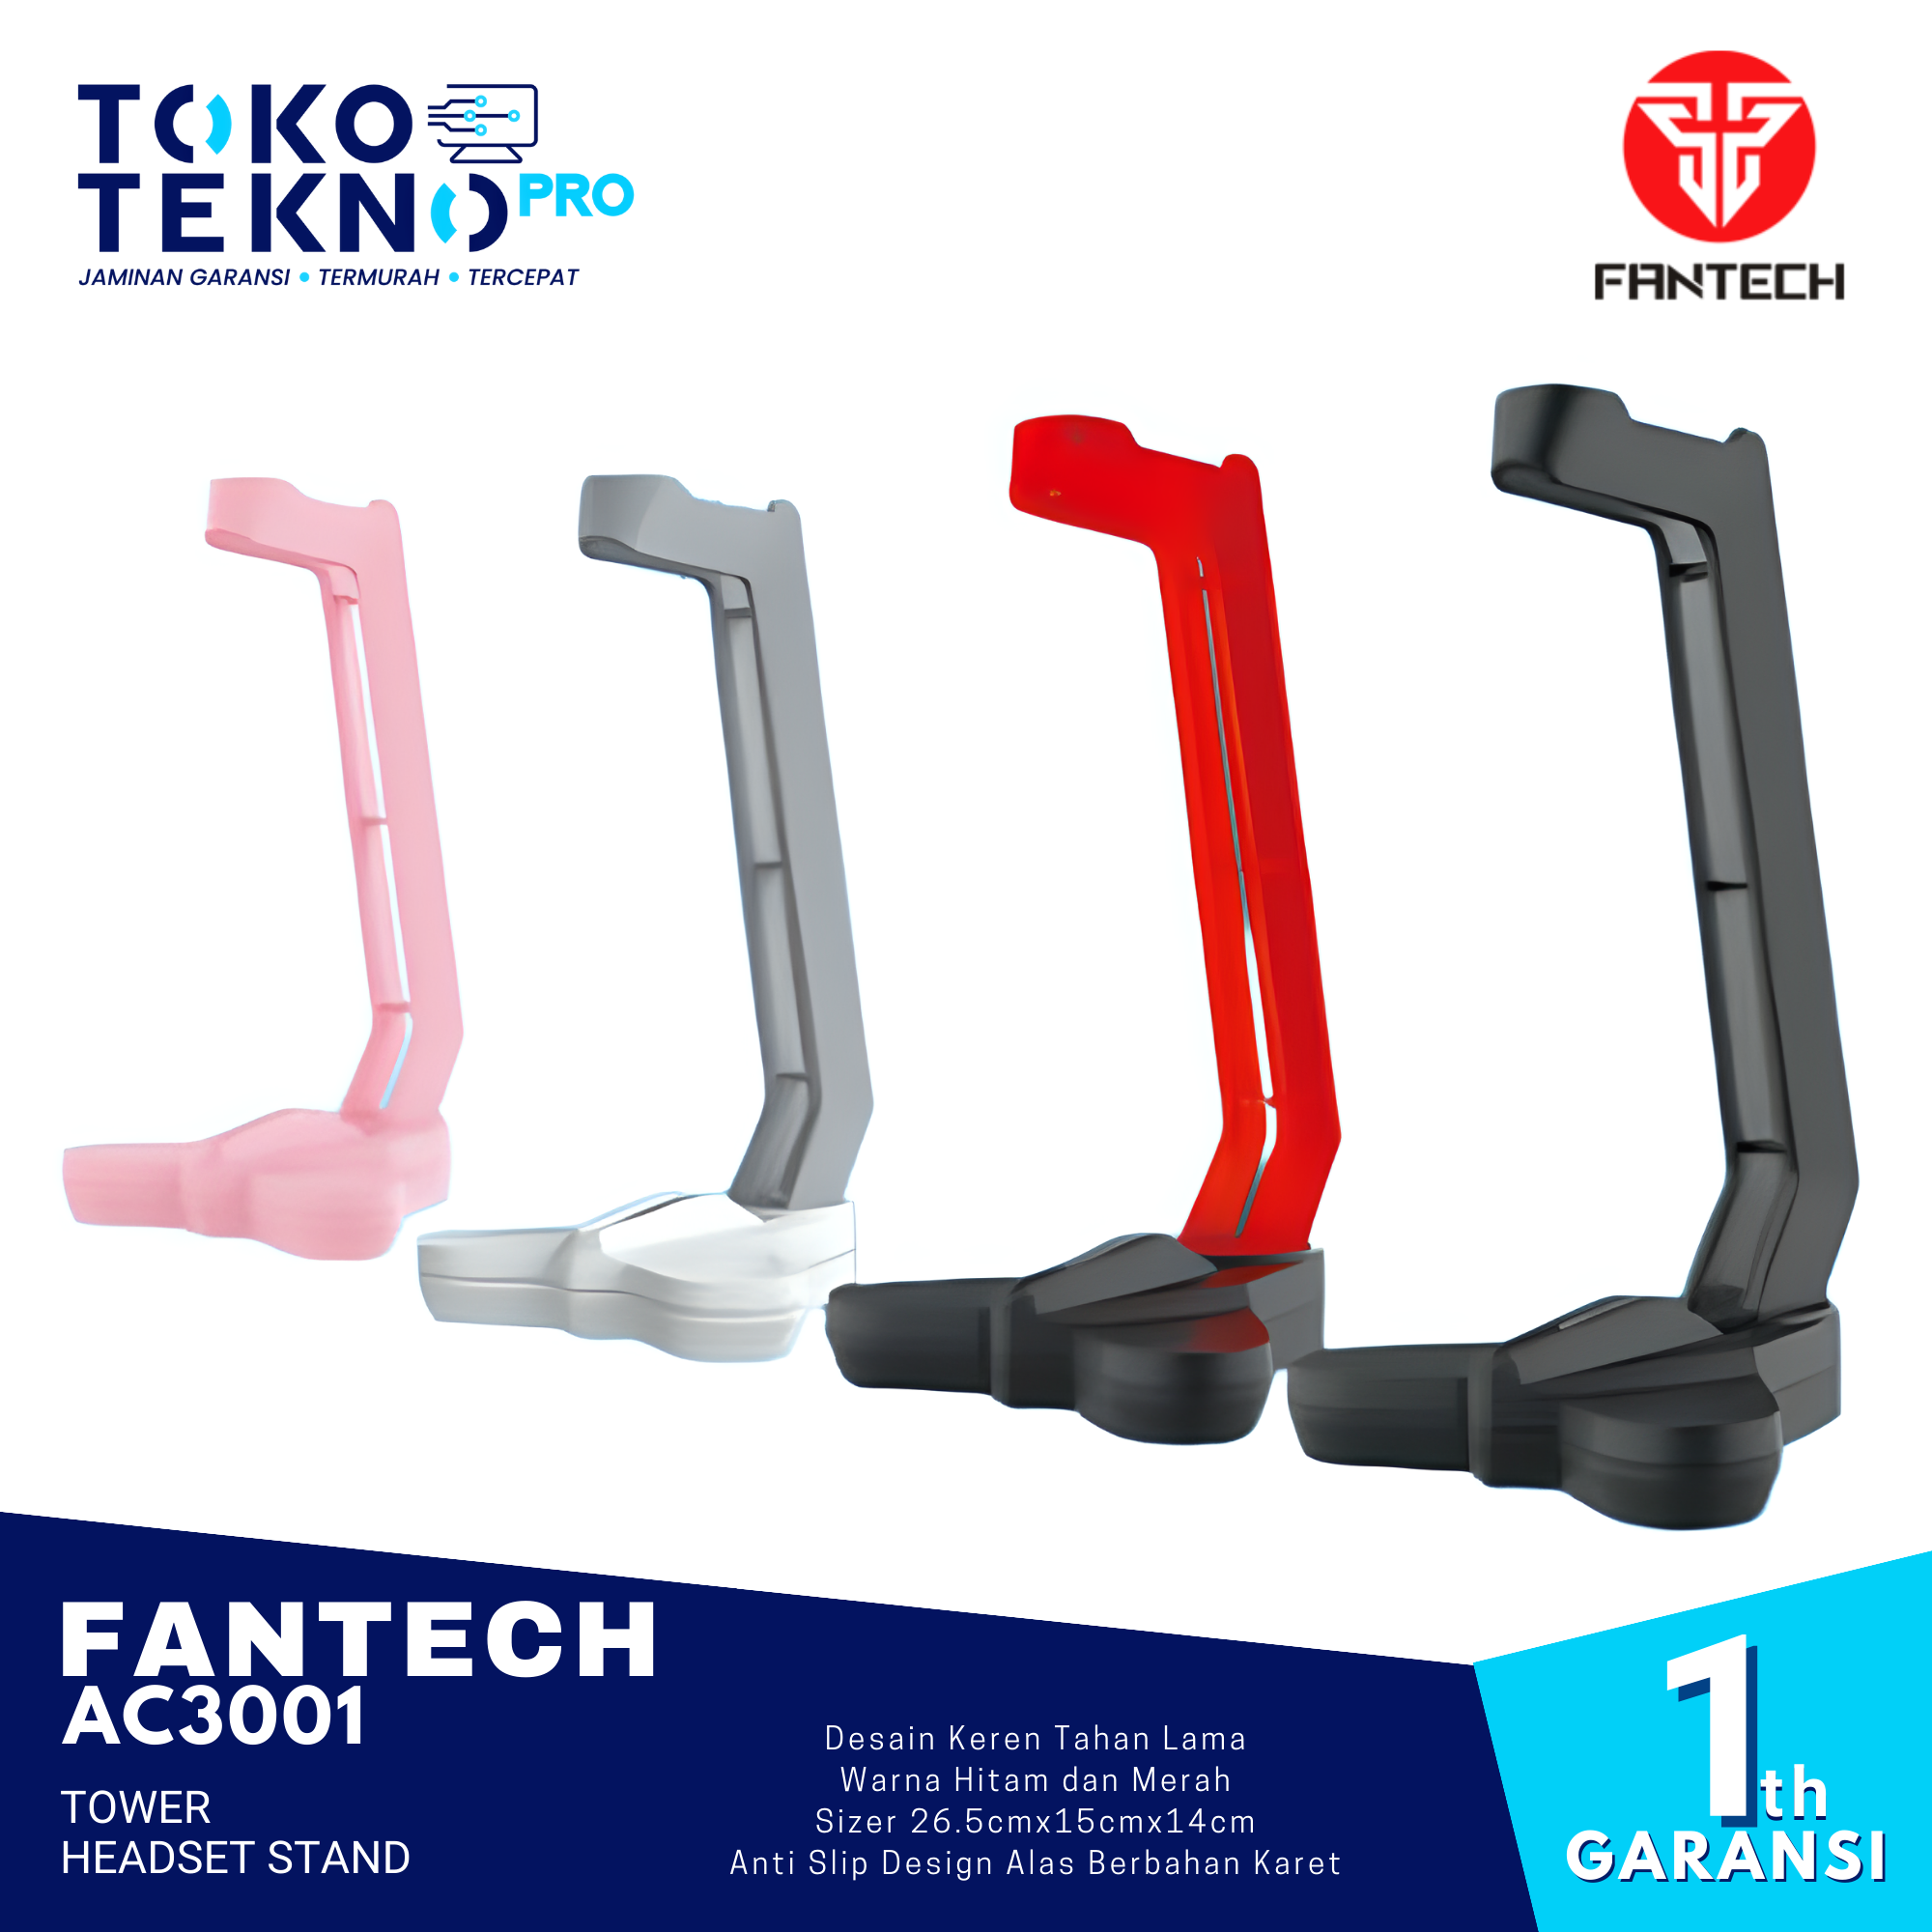 Fantech AC3001 Tower Headset Stand